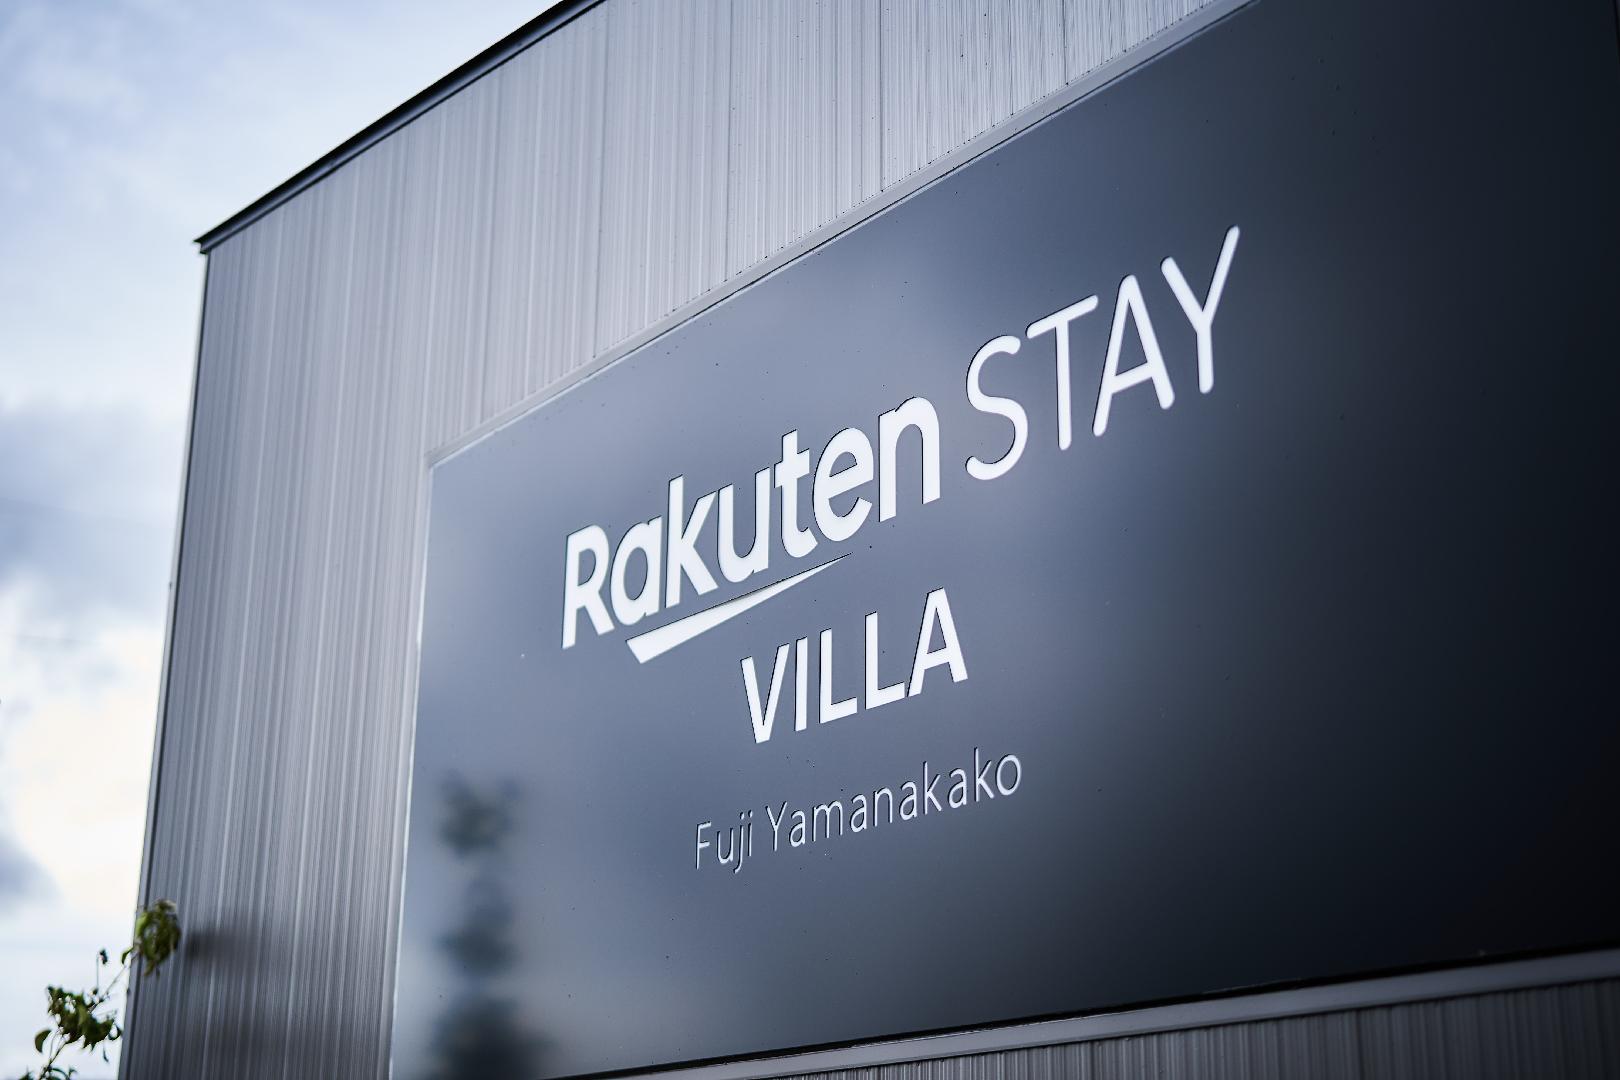 Rakuten Stay Villa Fuji Yamanakako